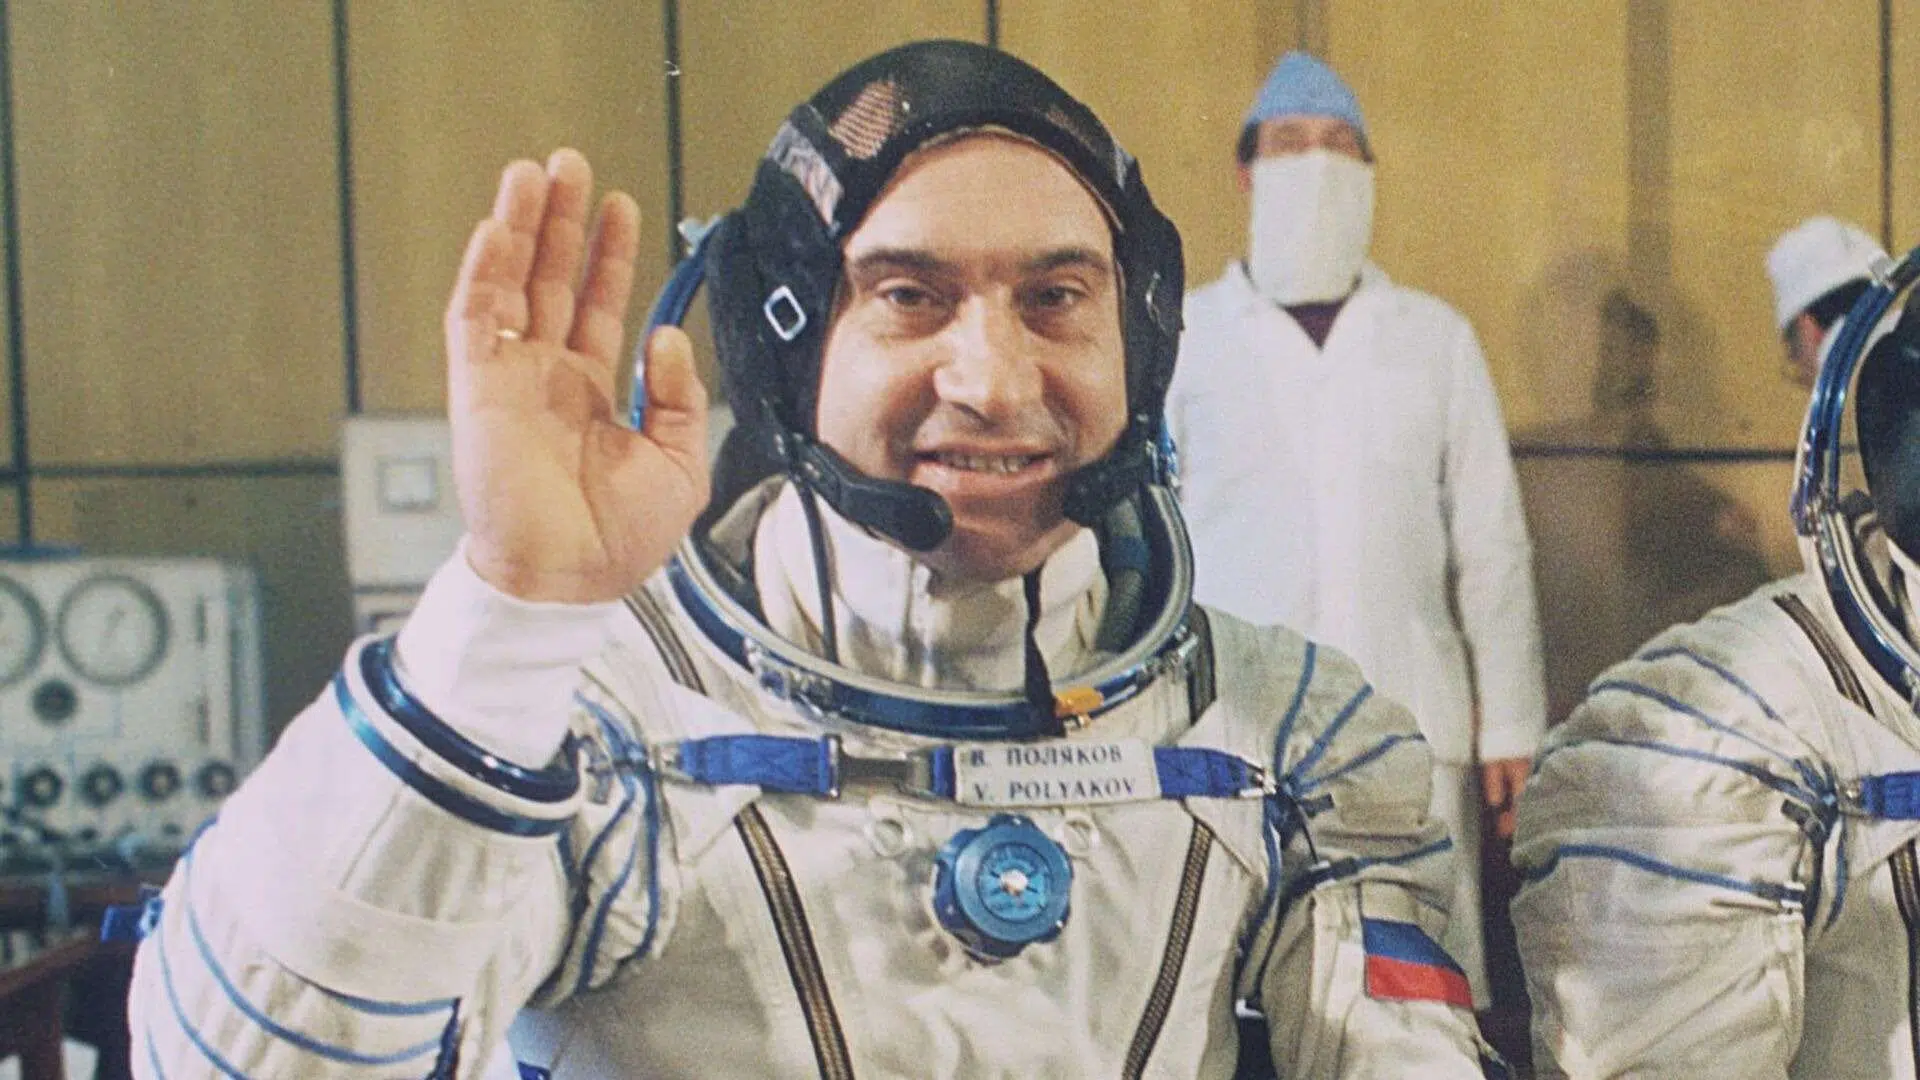 Πέθανε ο Ρώσος κοσμοναύτης Β.Πολιακόφ – Είχε παραμείνει στο Διάστημα για 437 ημέρες